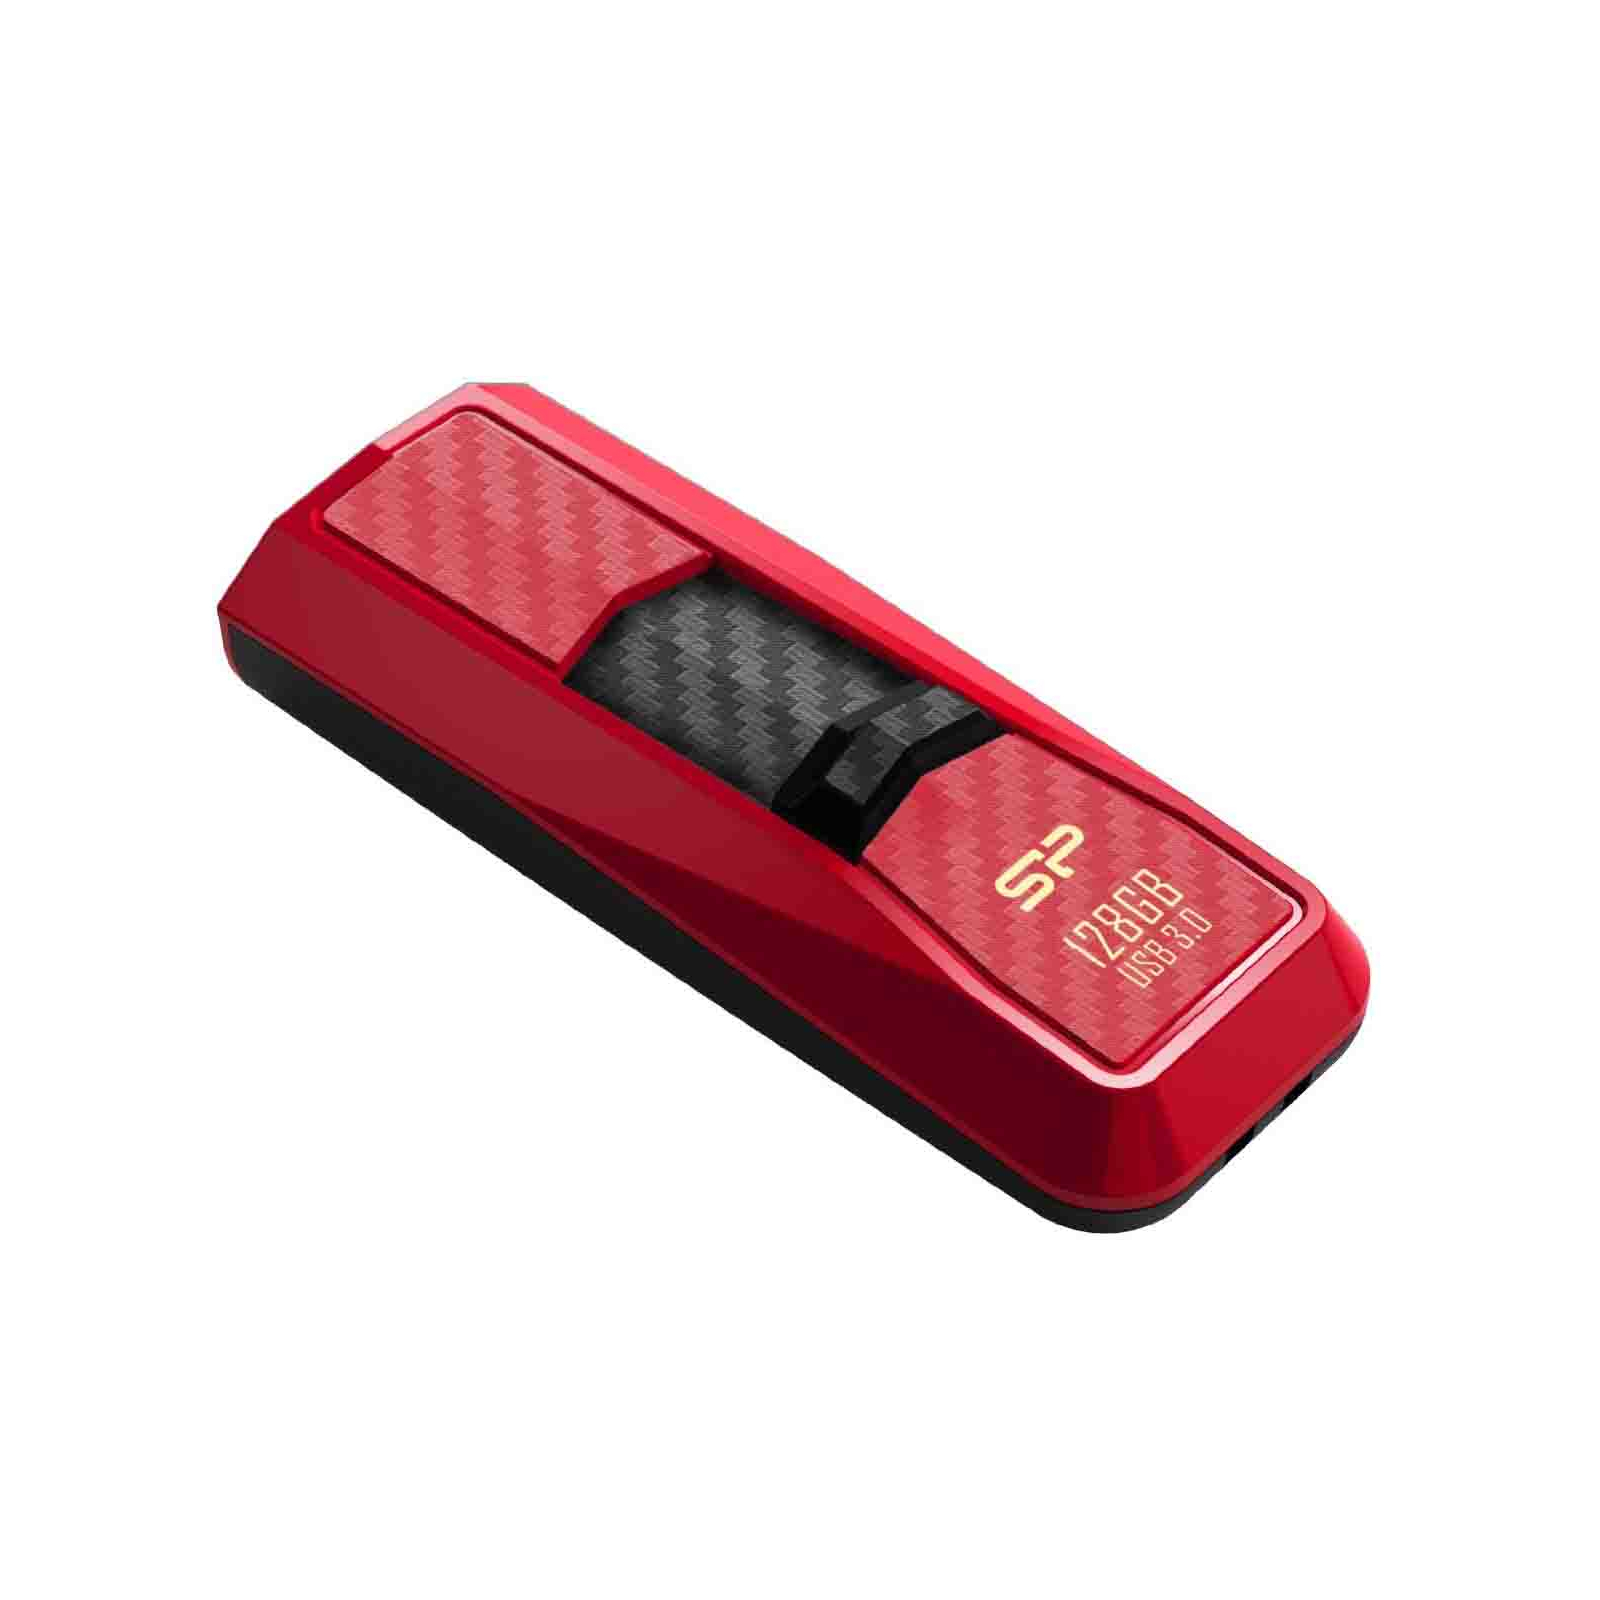 USB флеш накопитель Silicon Power 8GB Blaze B50 Red USB 3.0 (SP008GBUF3B50V1R) изображение 3